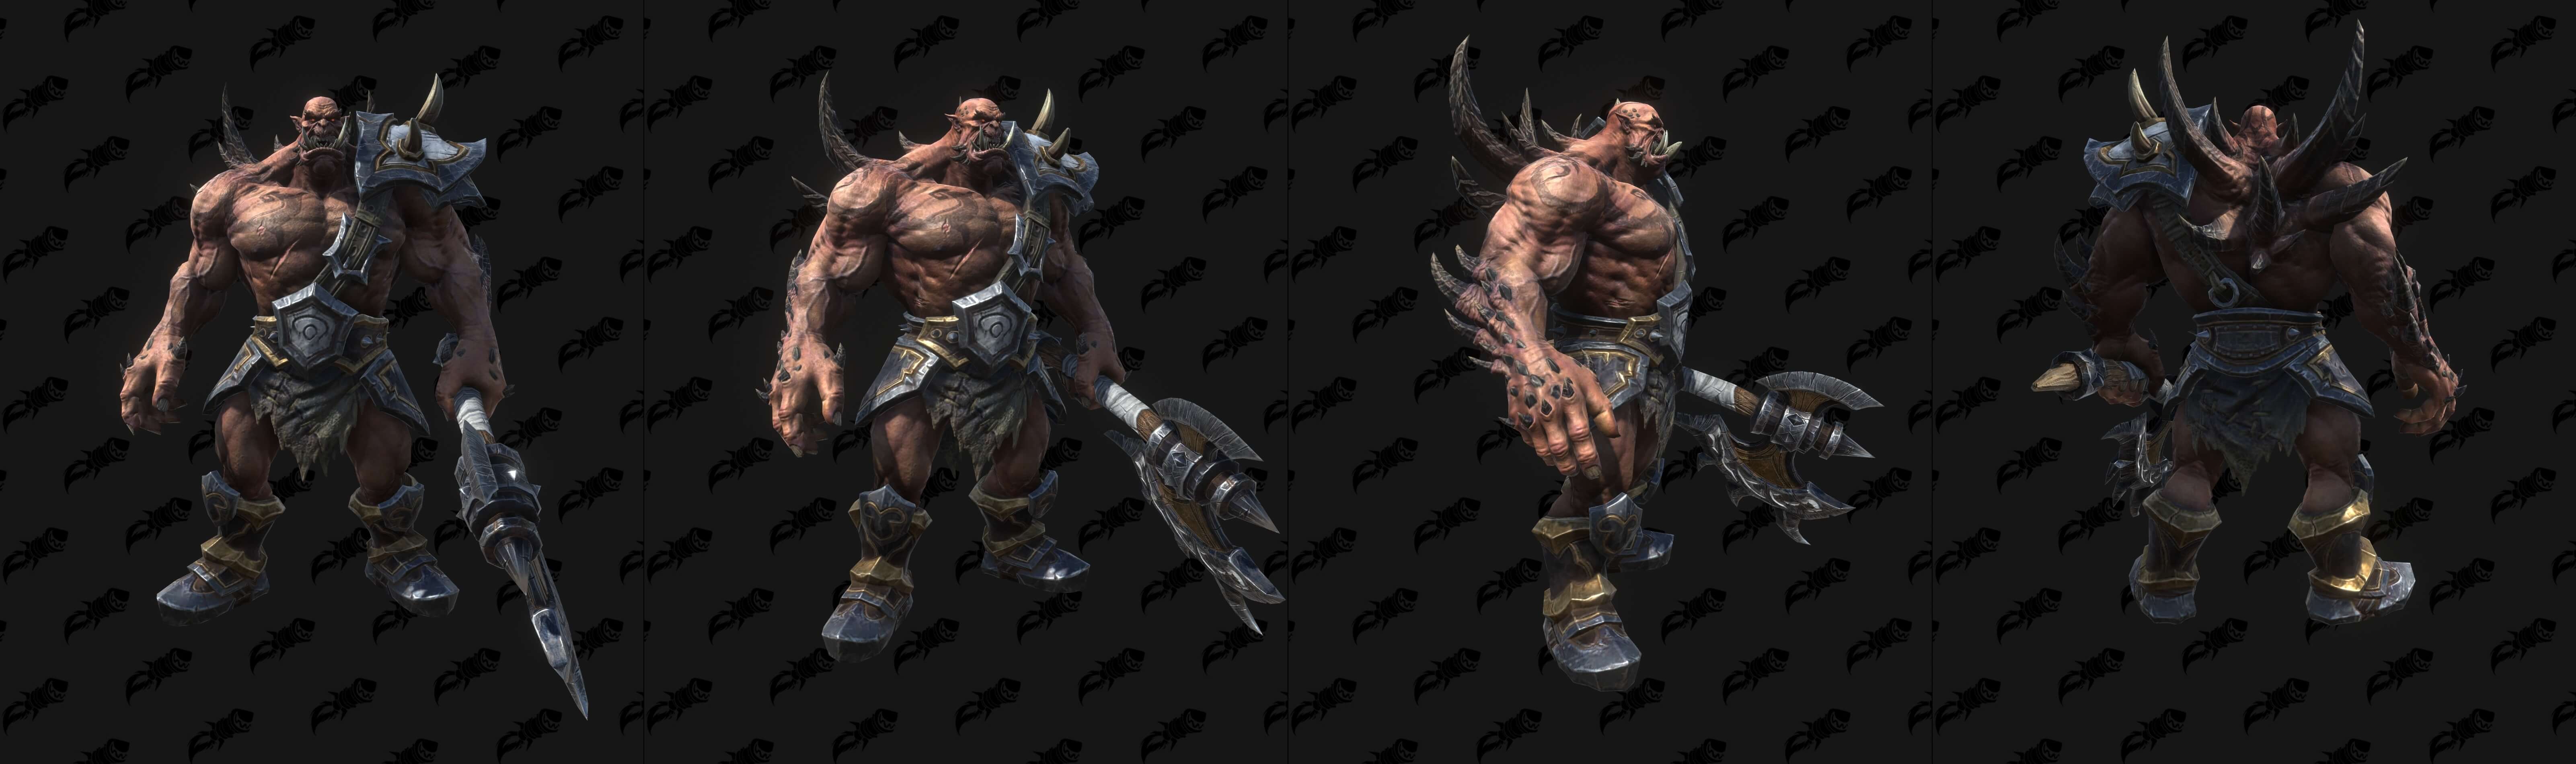 Модели демонов и связанных с ними юнитов из Warcraft III: Reforged